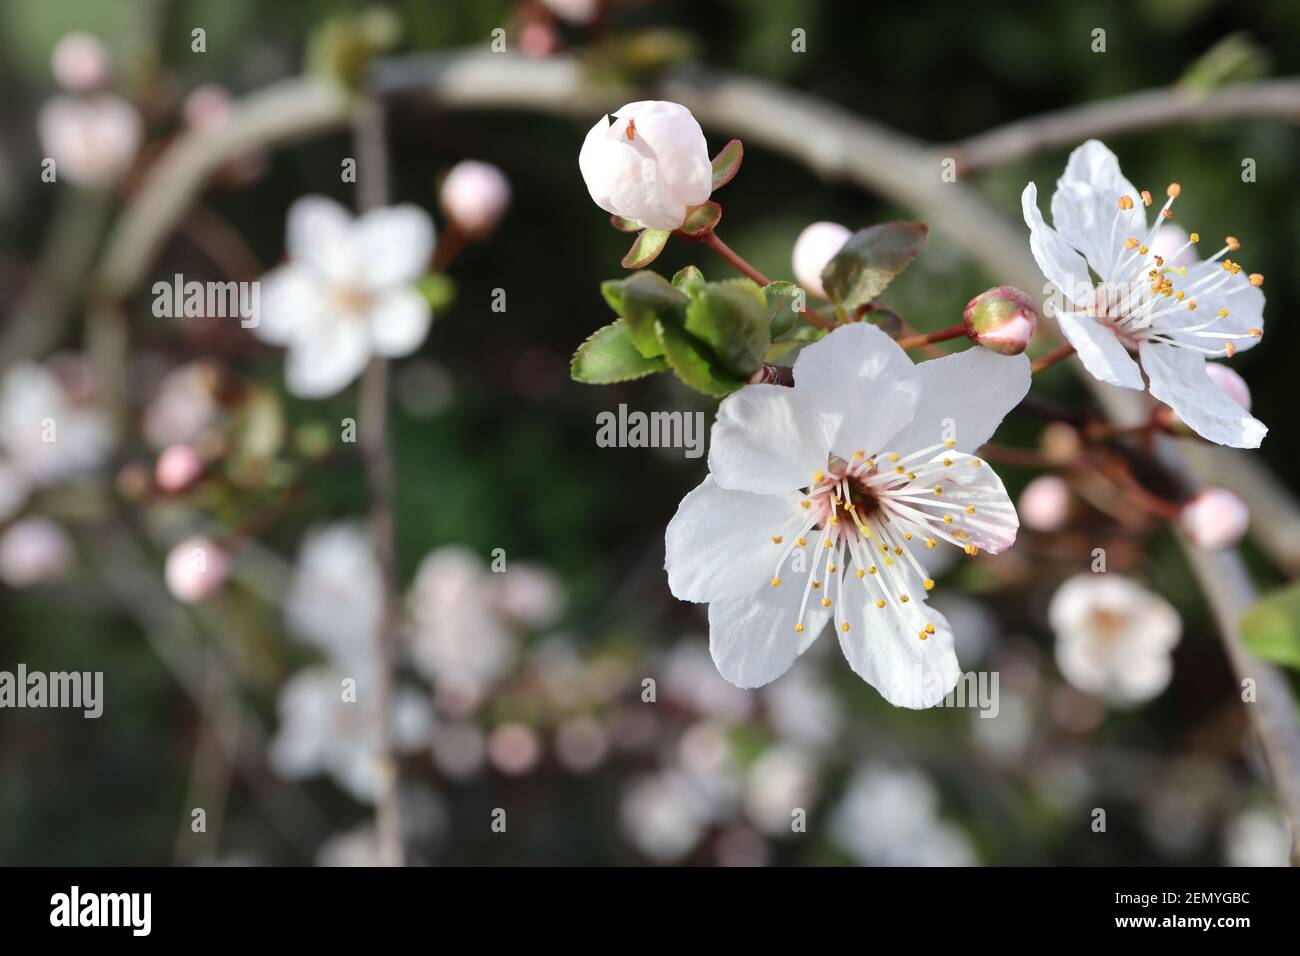 Prunus cerasifera prugna di ciliegia – piccoli fiori bianchi a forma di ciotola con molte stampigliature, steli rossi, foglie da verdi a marroni, febbraio, Inghilterra, Regno Unito Foto Stock